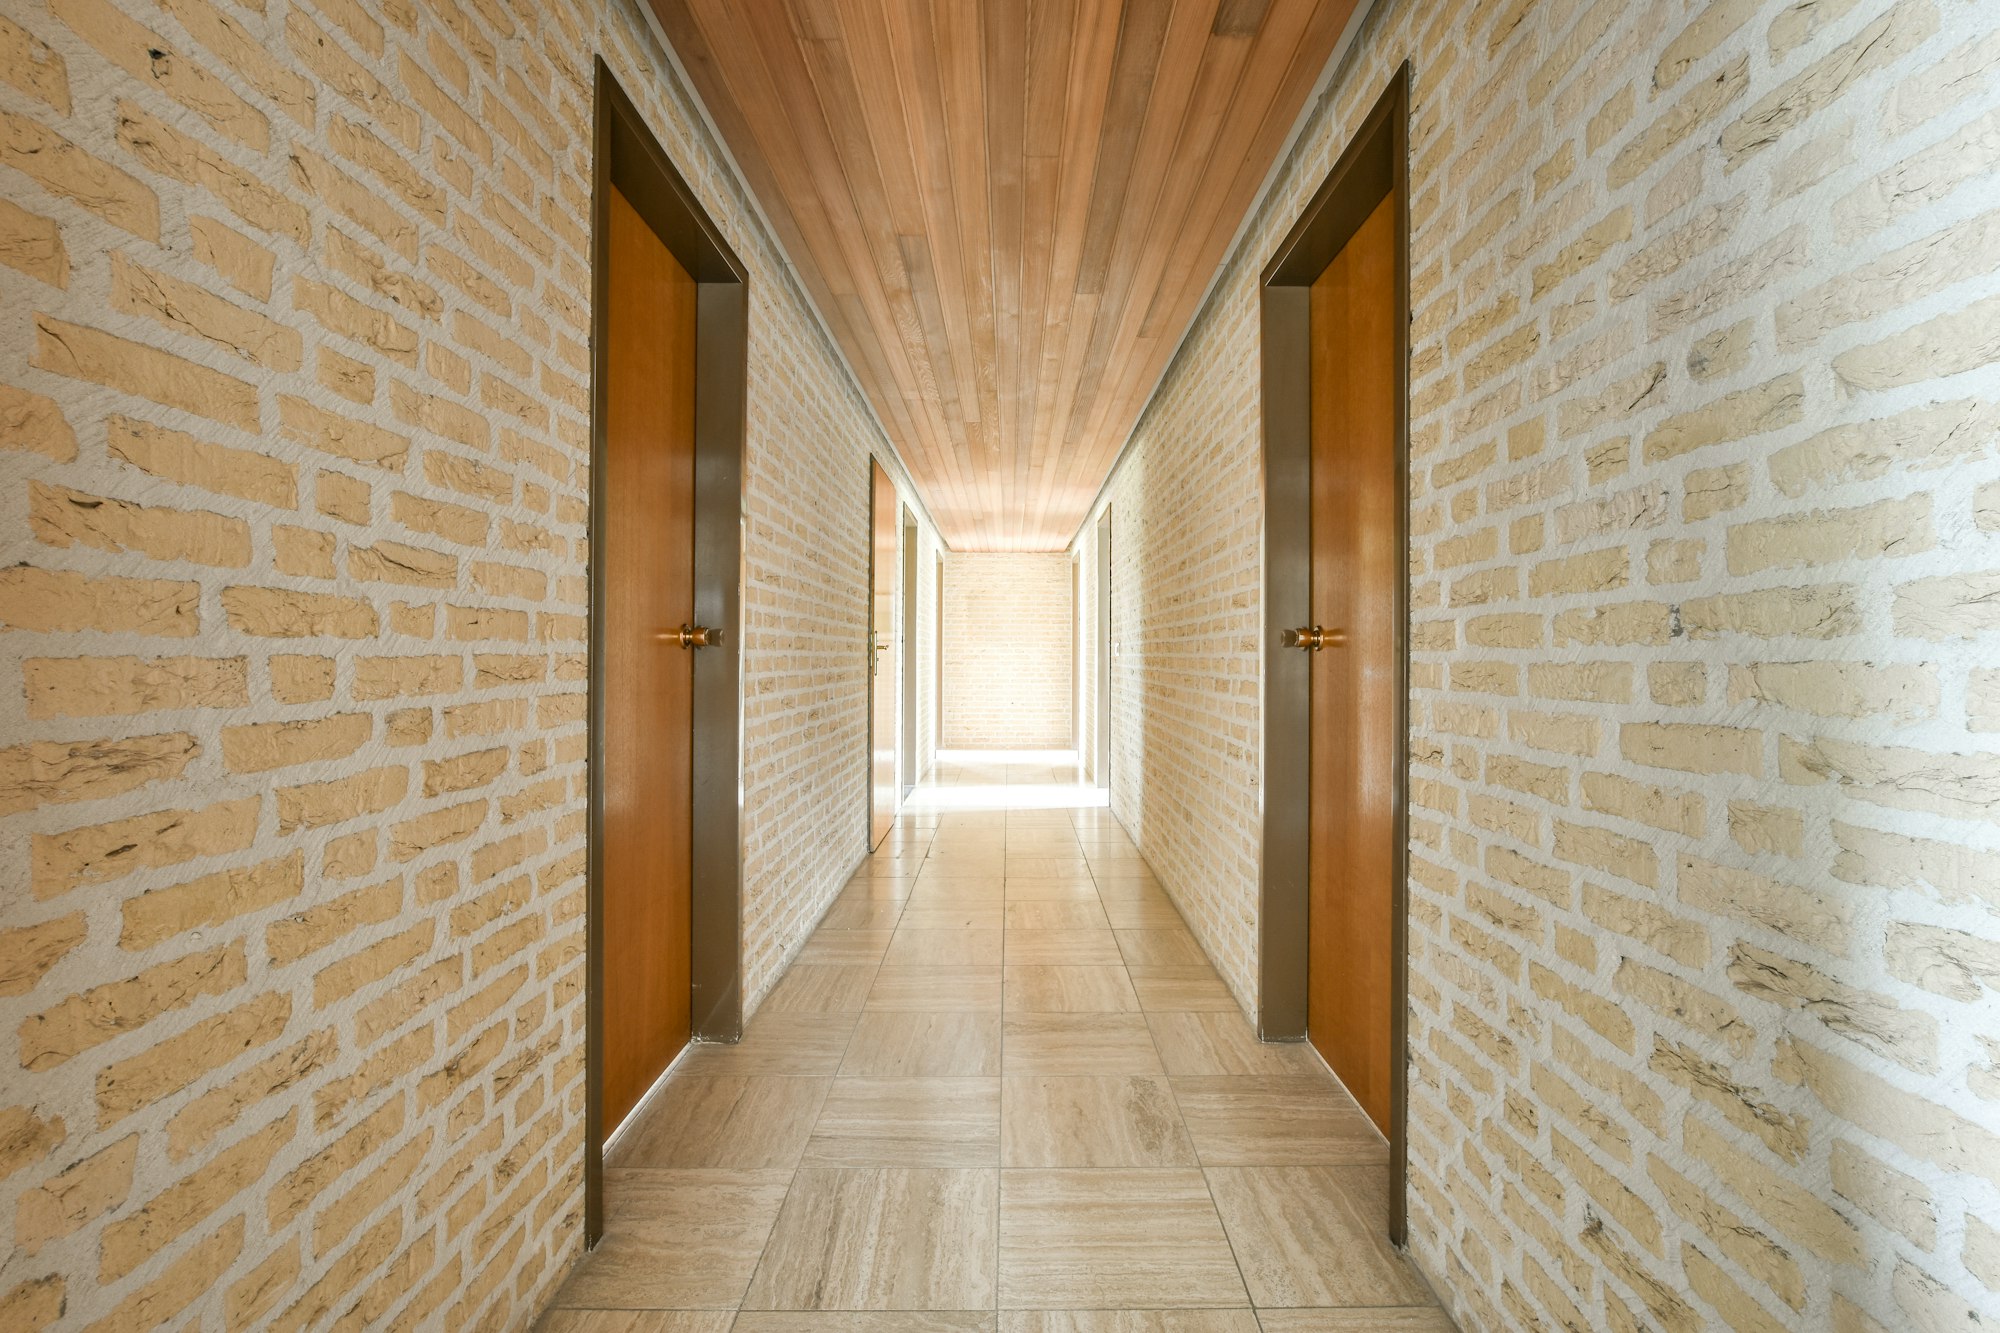 Narrow corridor with doors